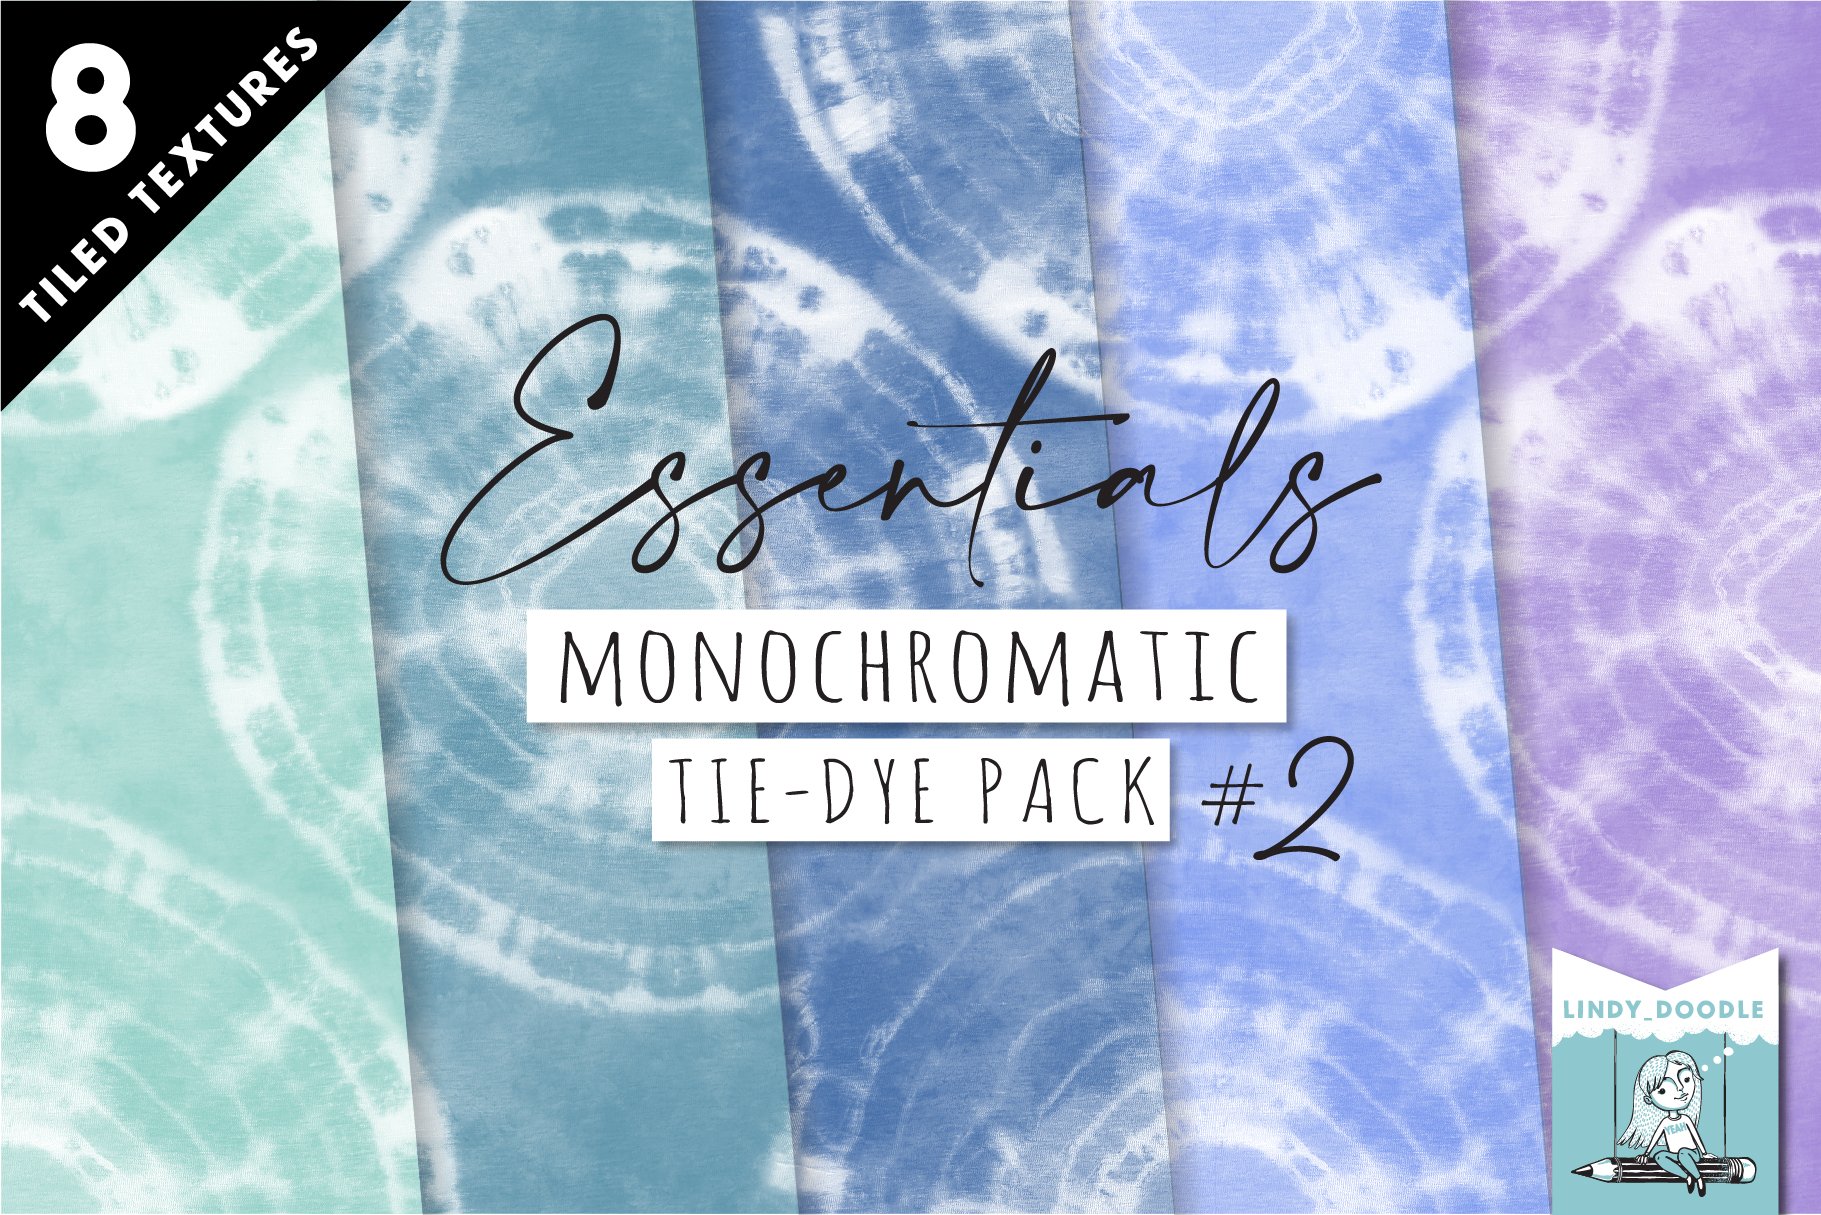 tiedye essentials monochromatic 02 09 118